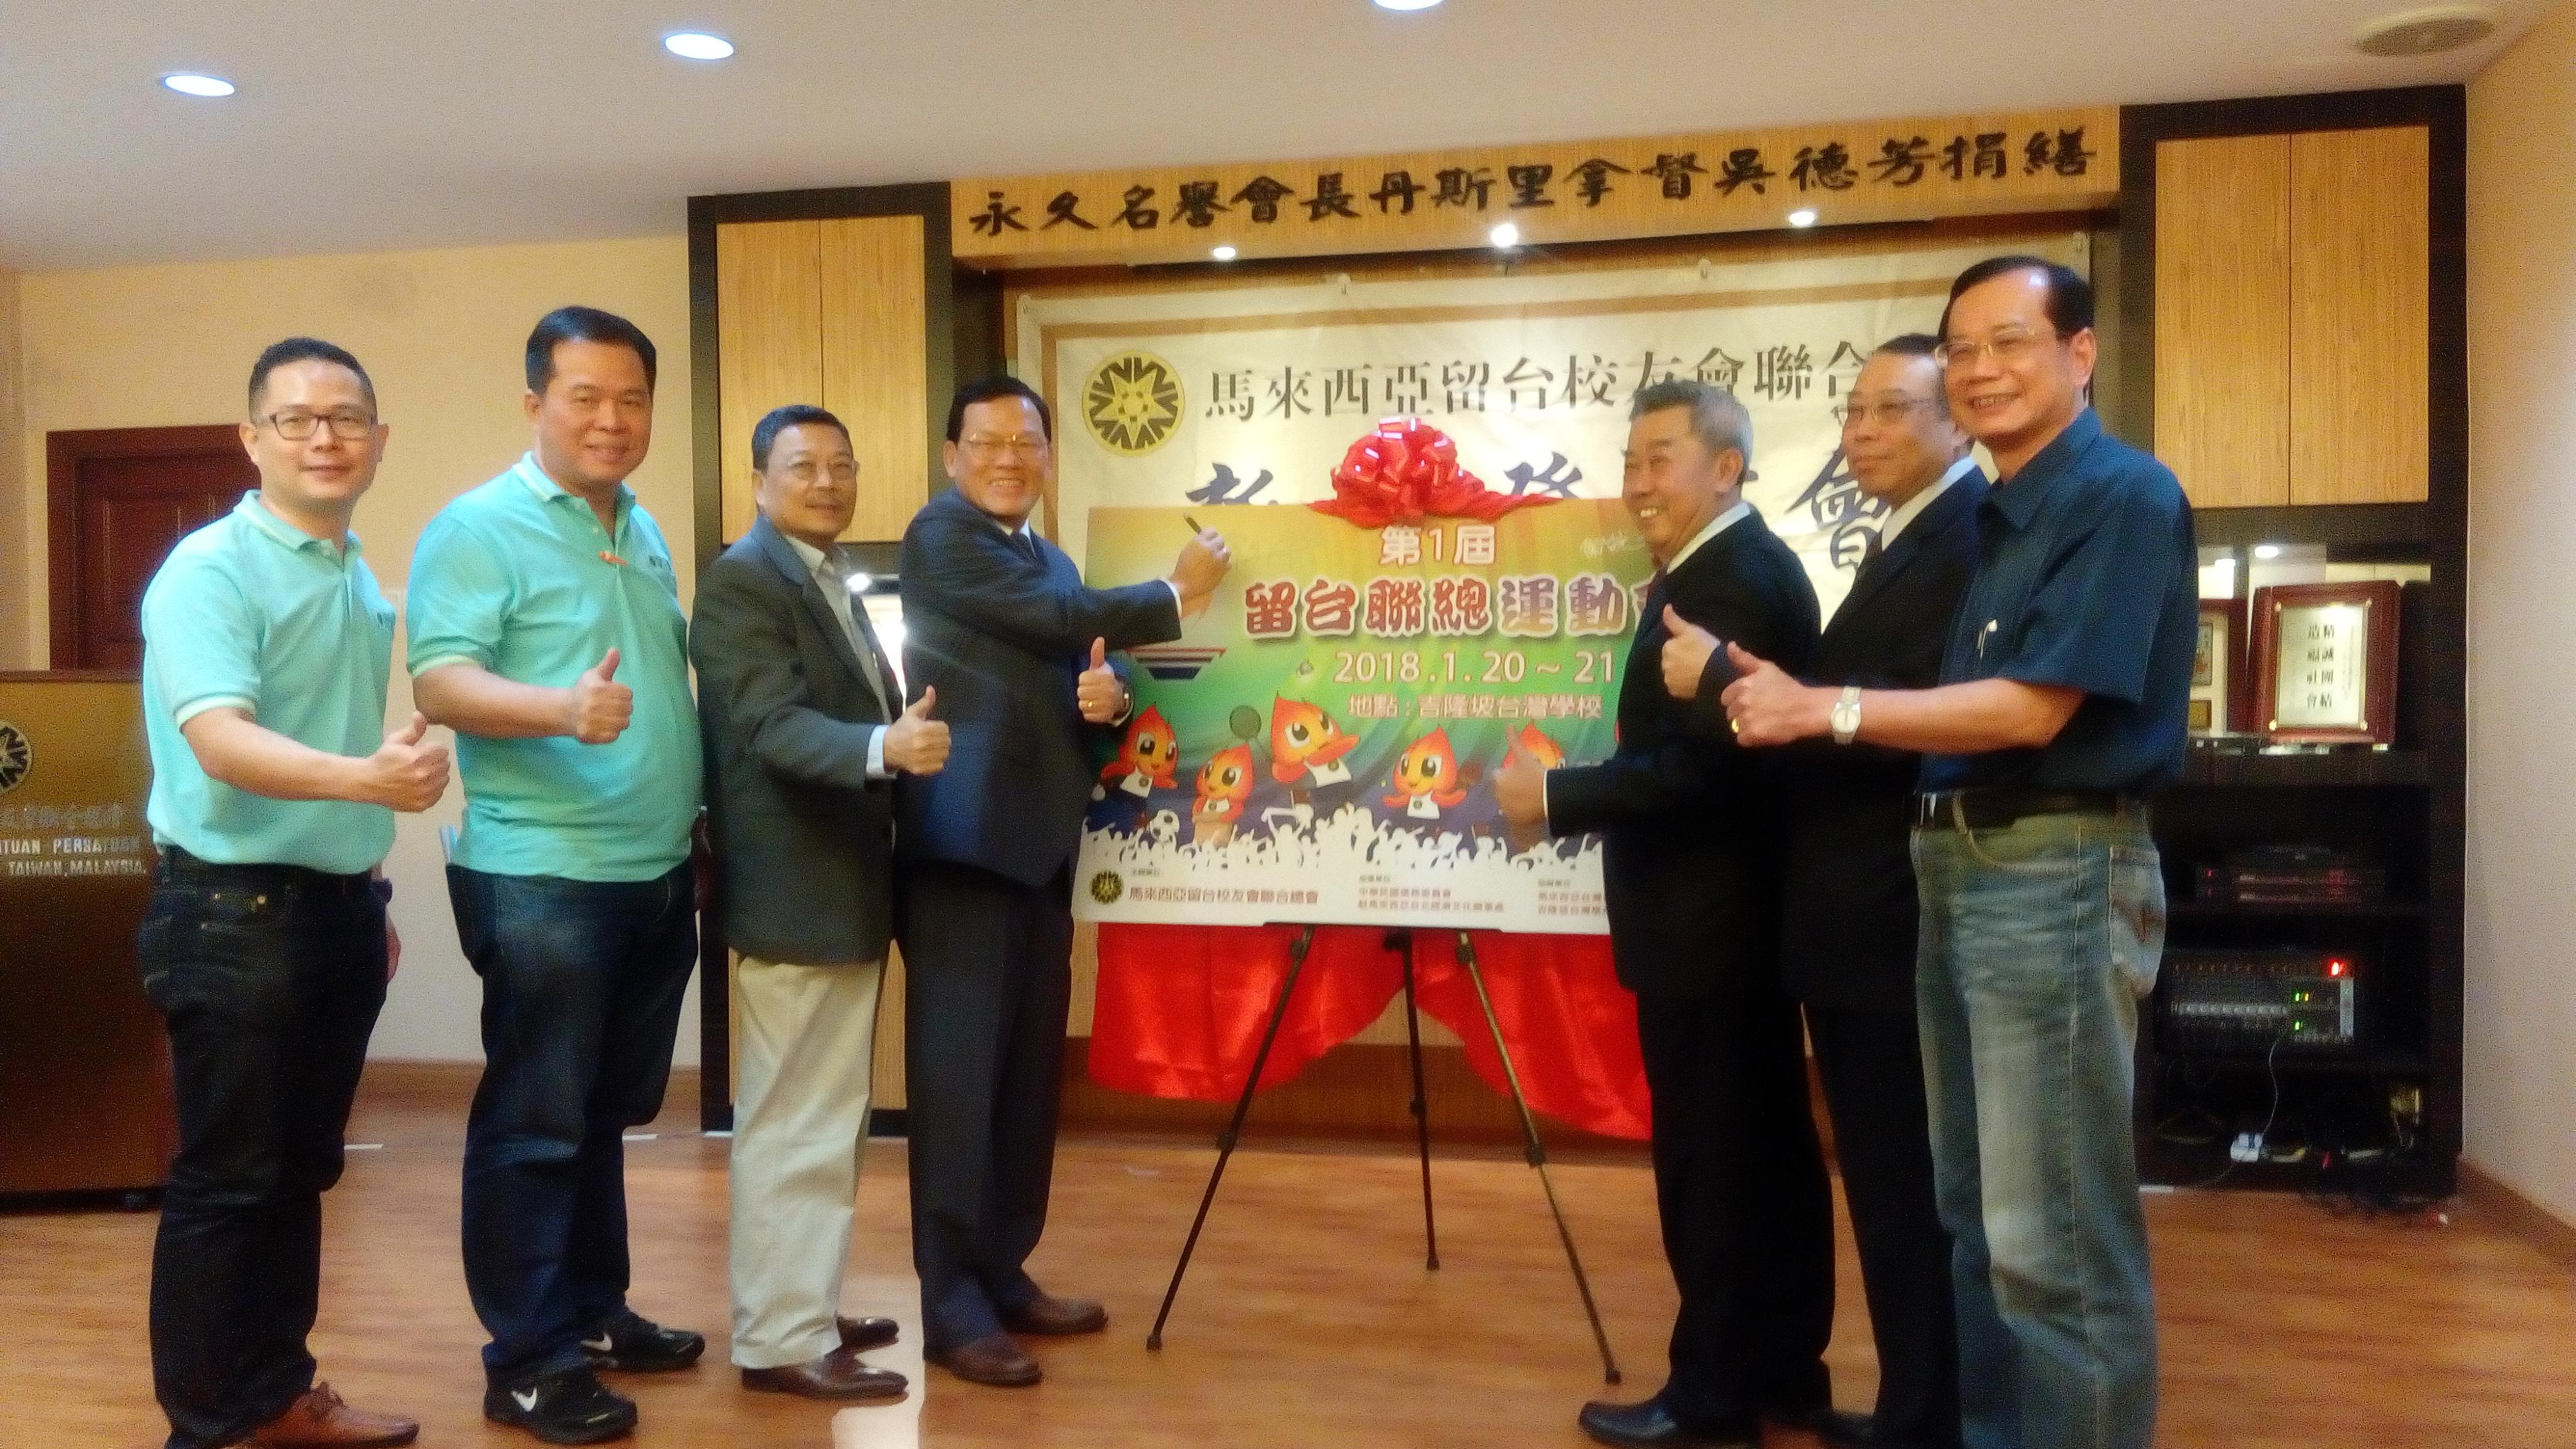 Wakil Chang, James Chi-ping (kiri empat)  menghadiri Gabungan Persatuan Alumni Universiti Taiwan, Malyasia Majlis Perasmian Pertandingan Sukan Pertama mengabil gambar dengan VIP.